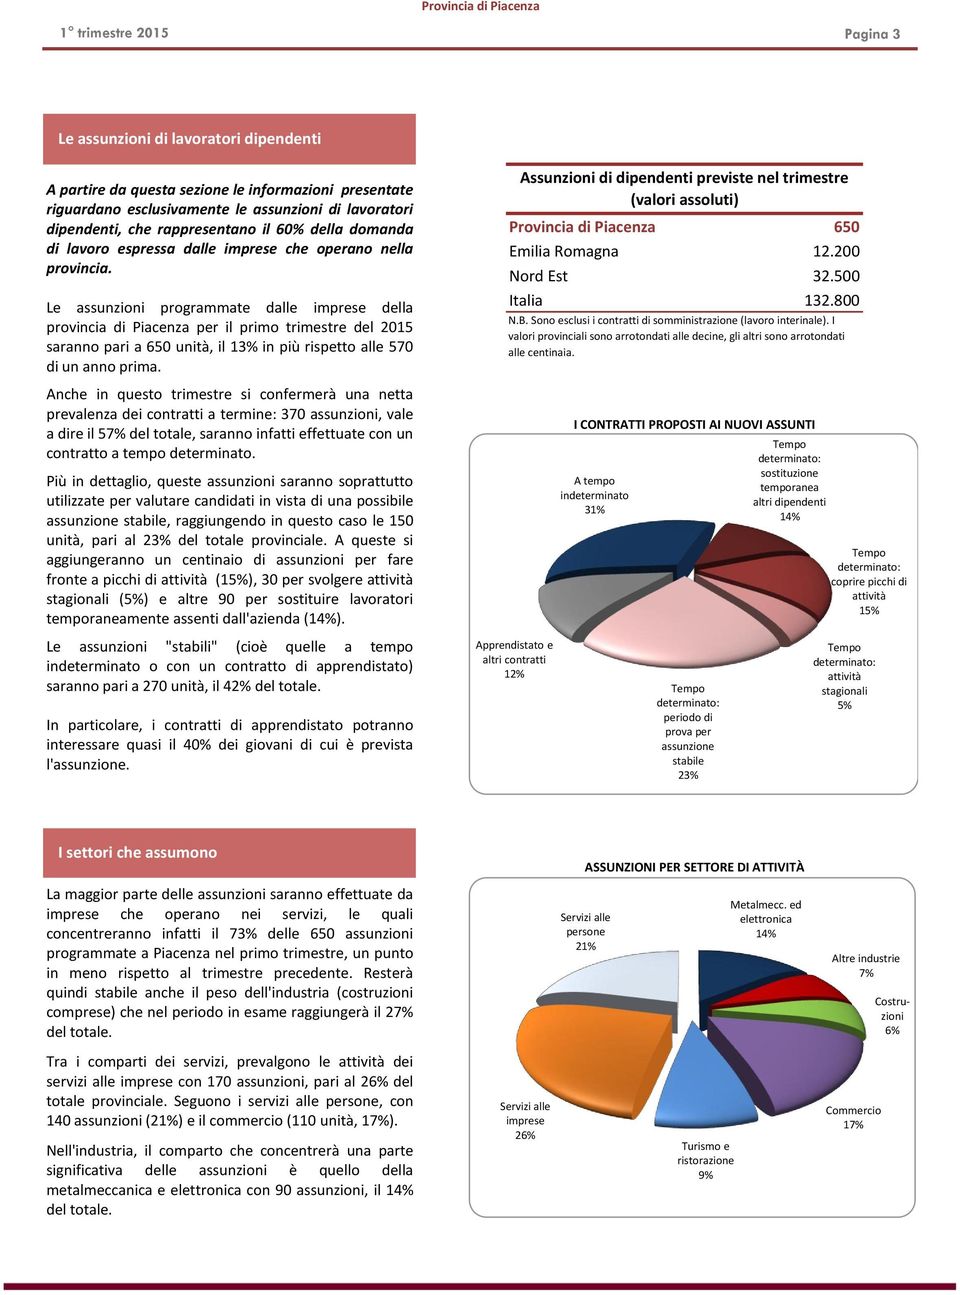 Le assunzioni programmate dalle imprese della provincia di Piacenza per il primo del 2015 saranno pari a 650 unità, il 13% in più rispetto alle 570 di un anno prima.